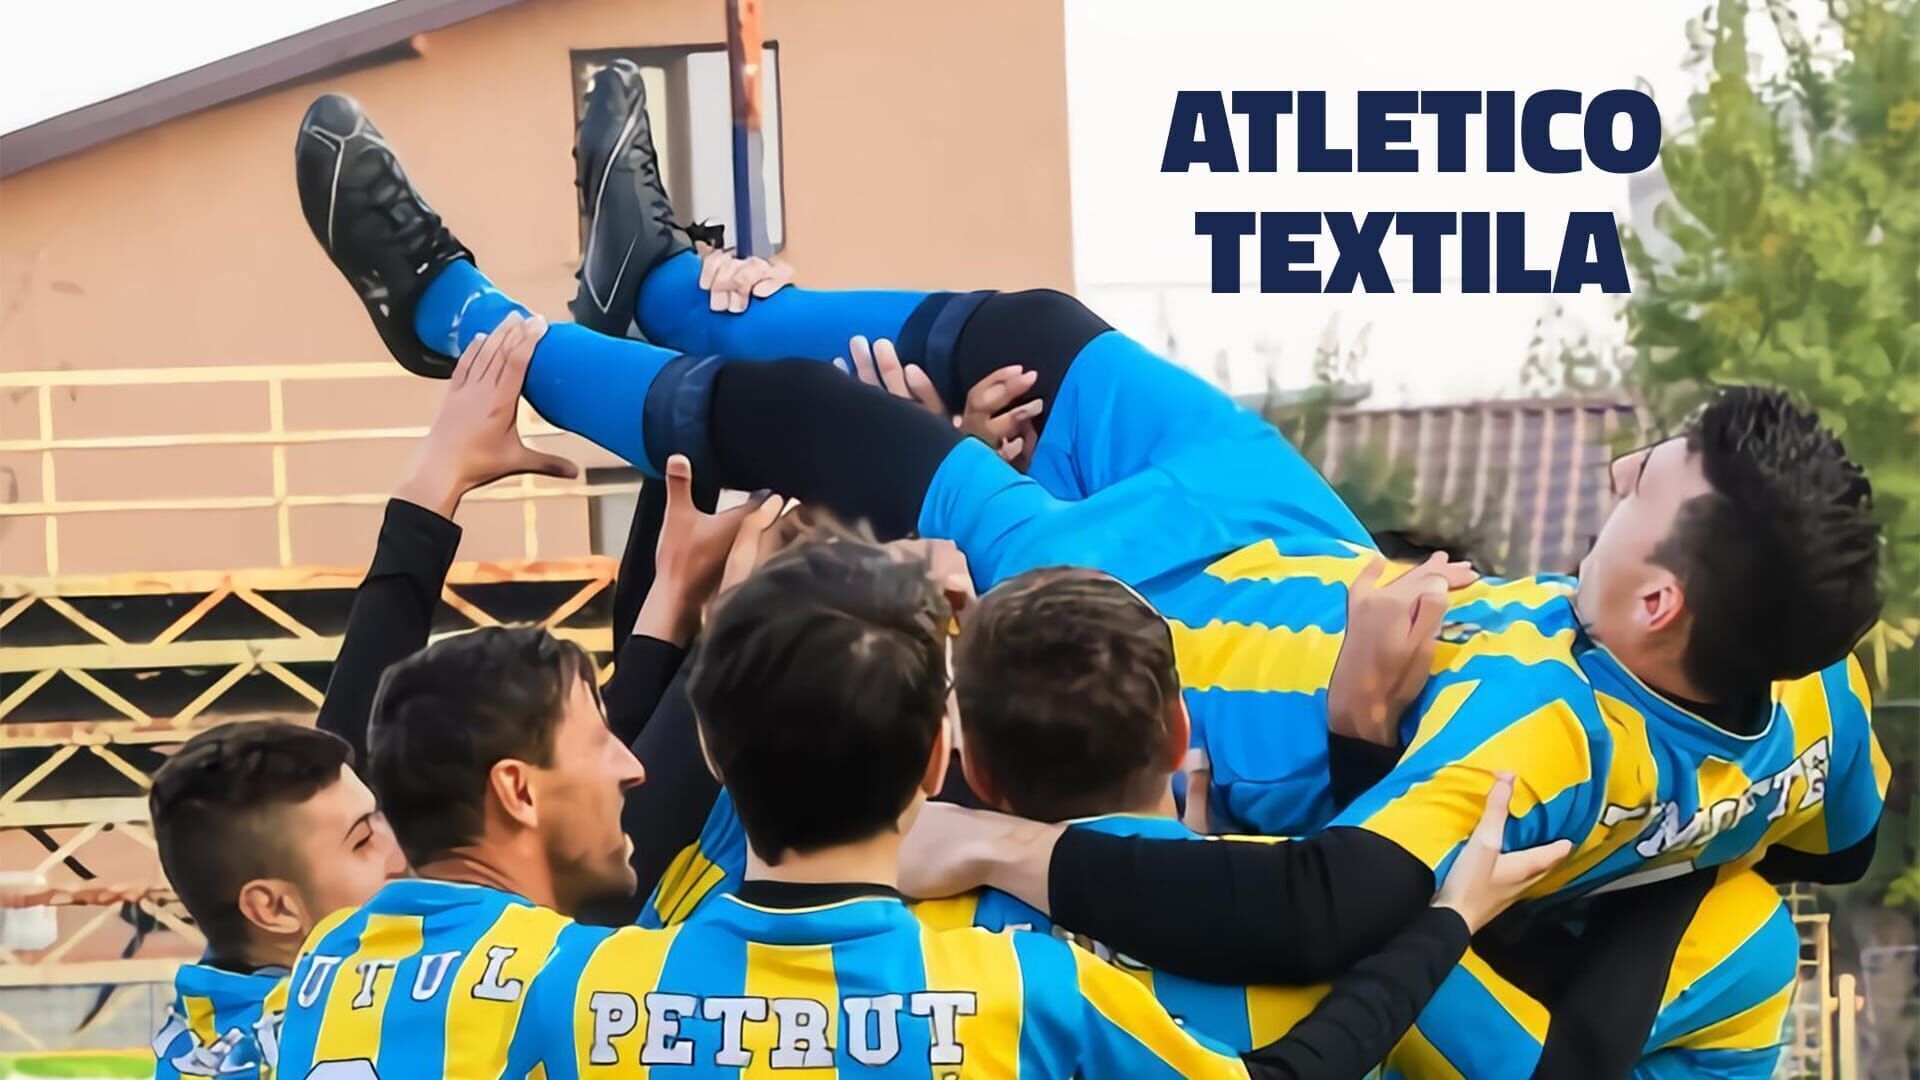 Atletico Textila - Piscina cea de taină